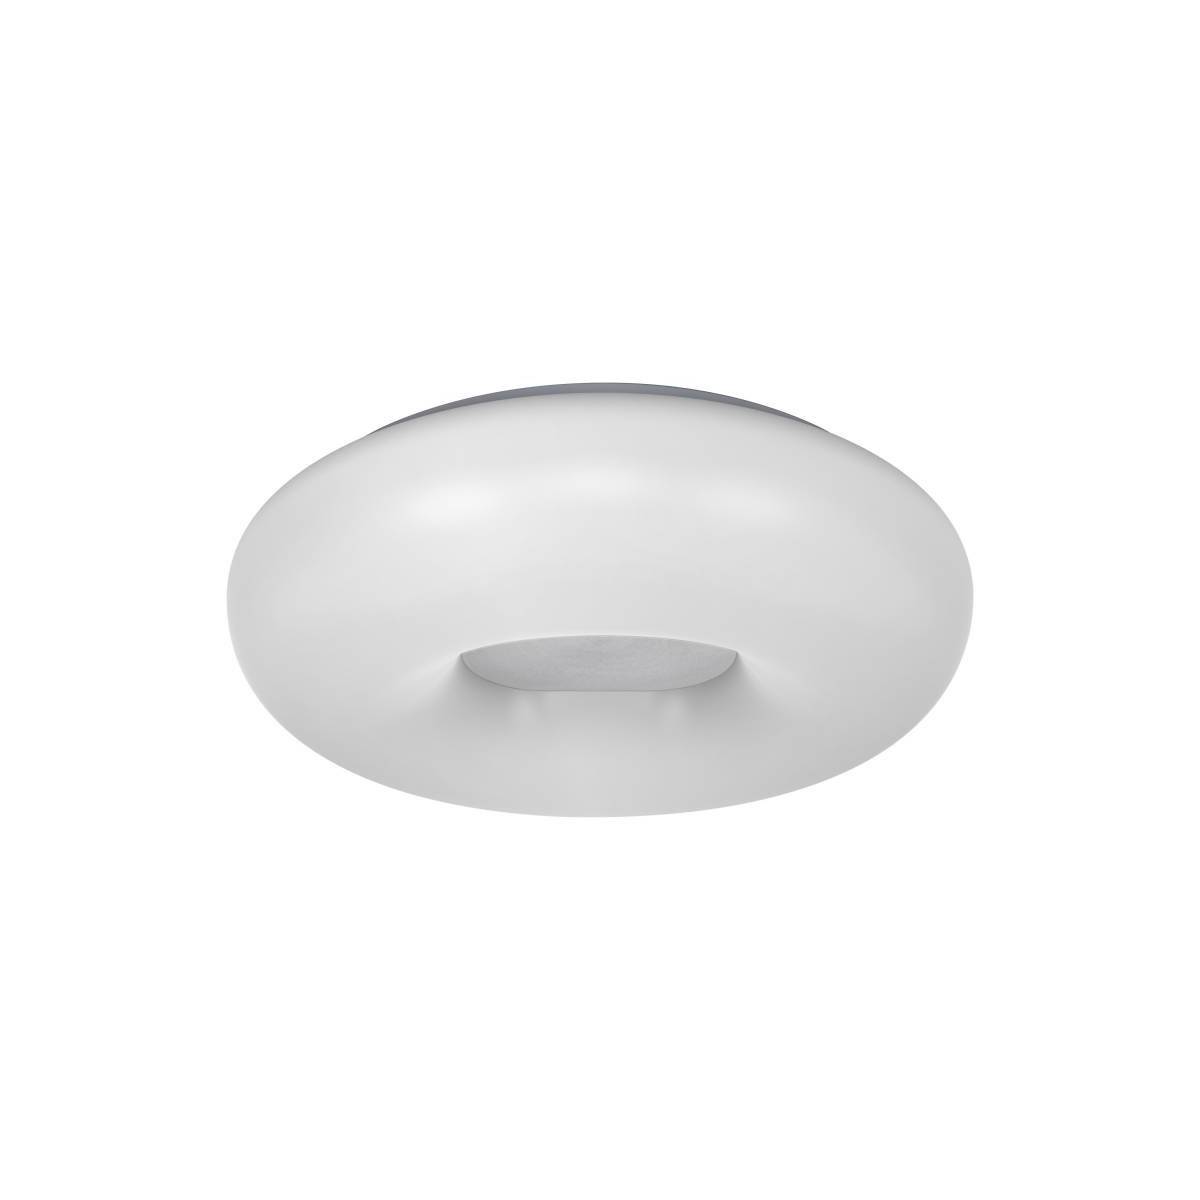 SMART WIFI LED Ceiling Light 4058075486300